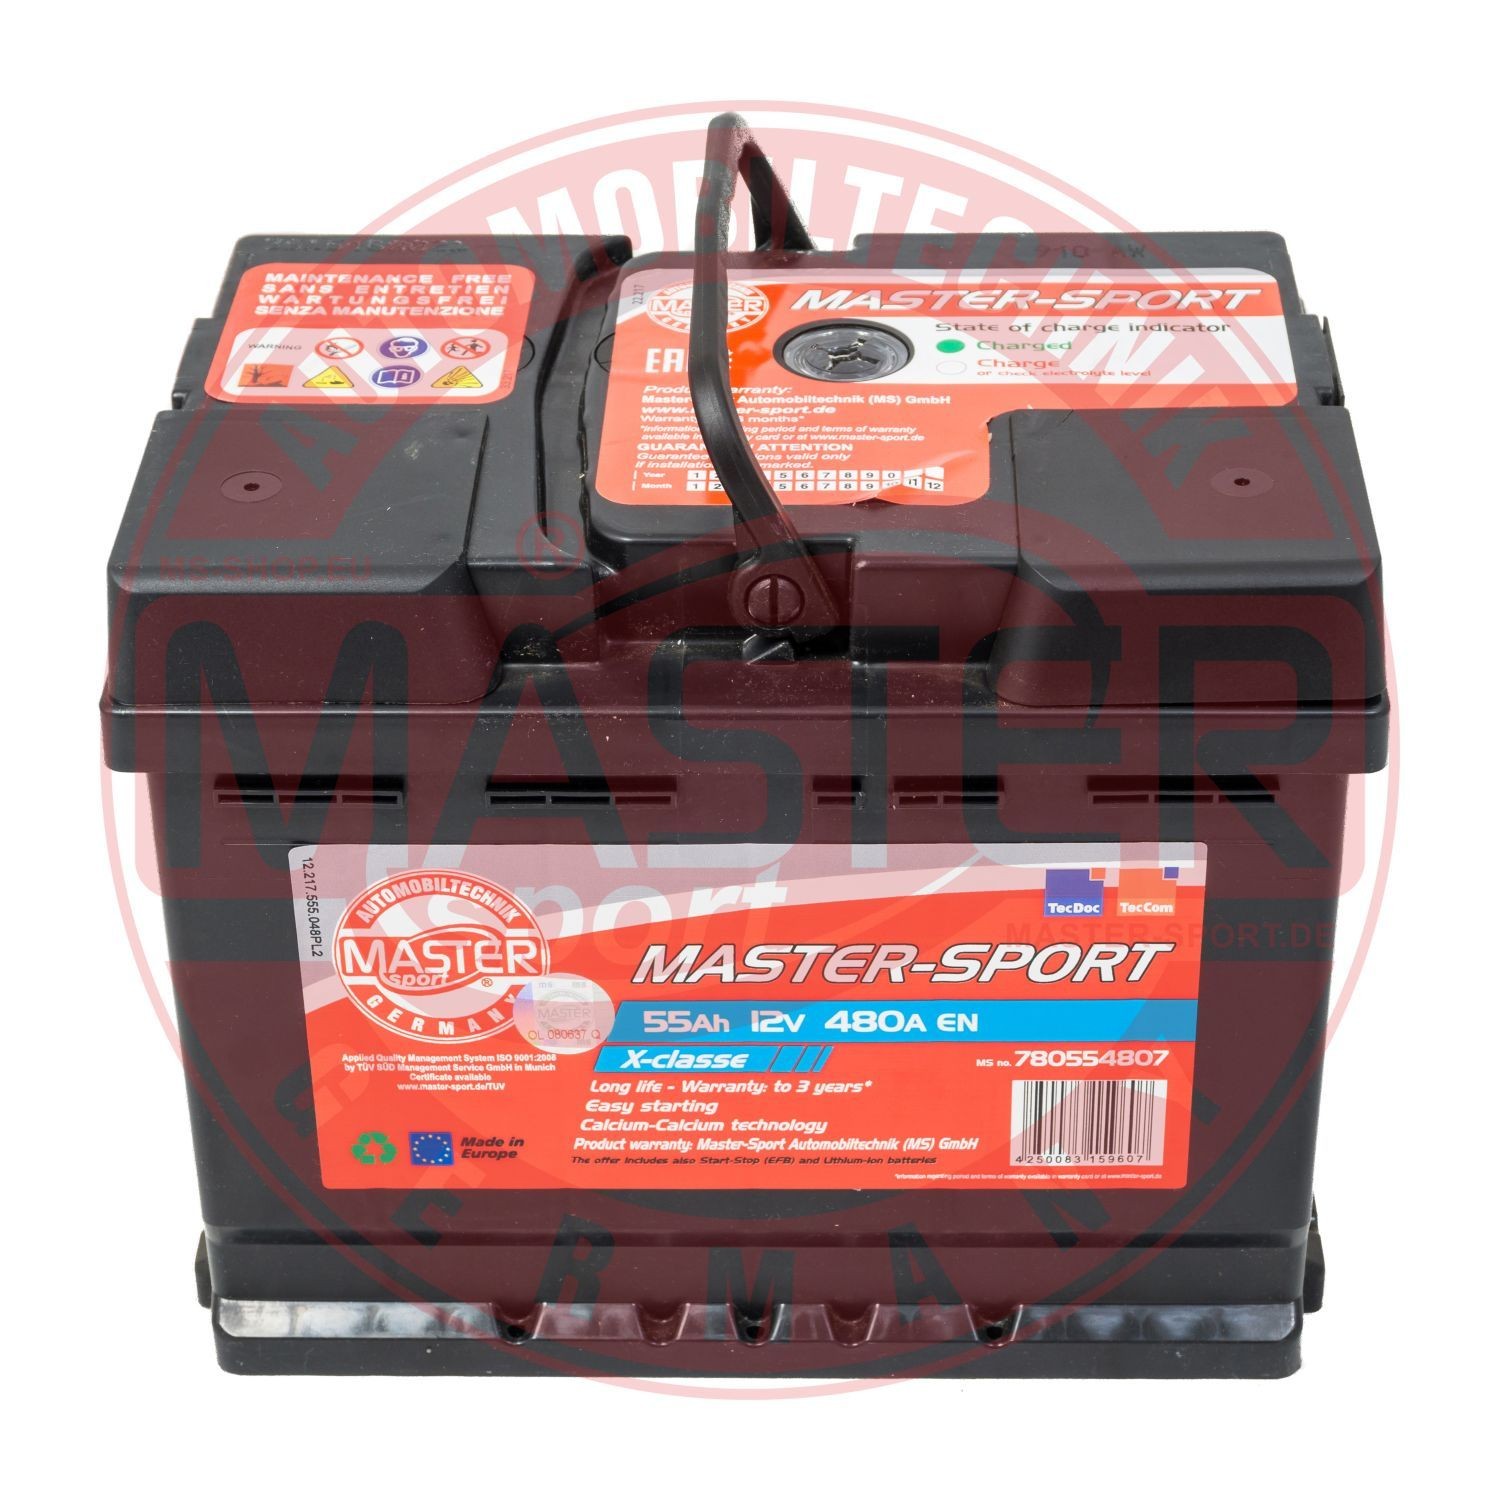 MASTER-SPORT 750554802 Battery 60627451